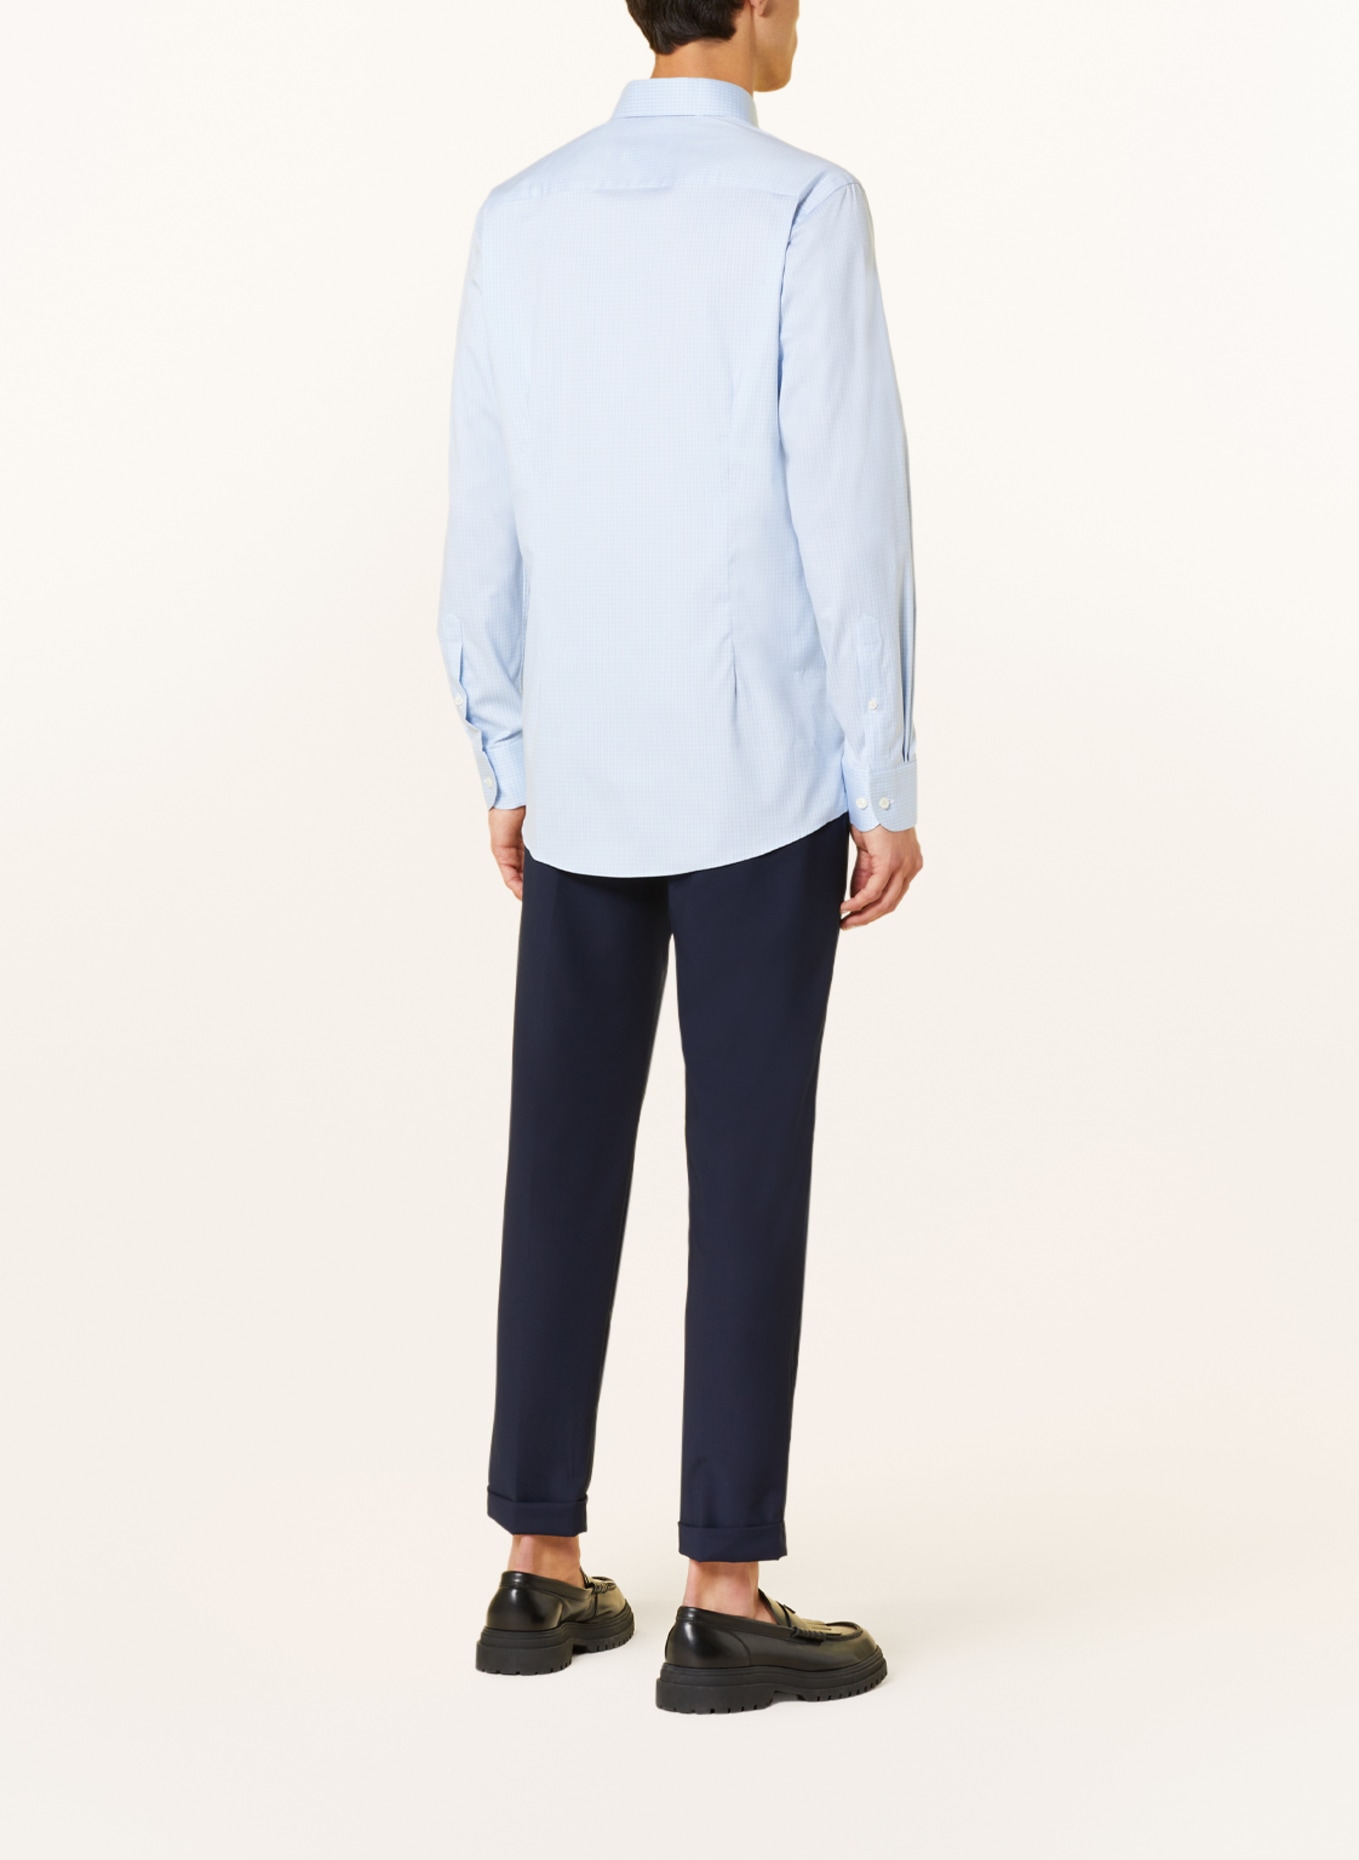 ETON Shirt contemporary fit, Color: LIGHT BLUE (Image 3)